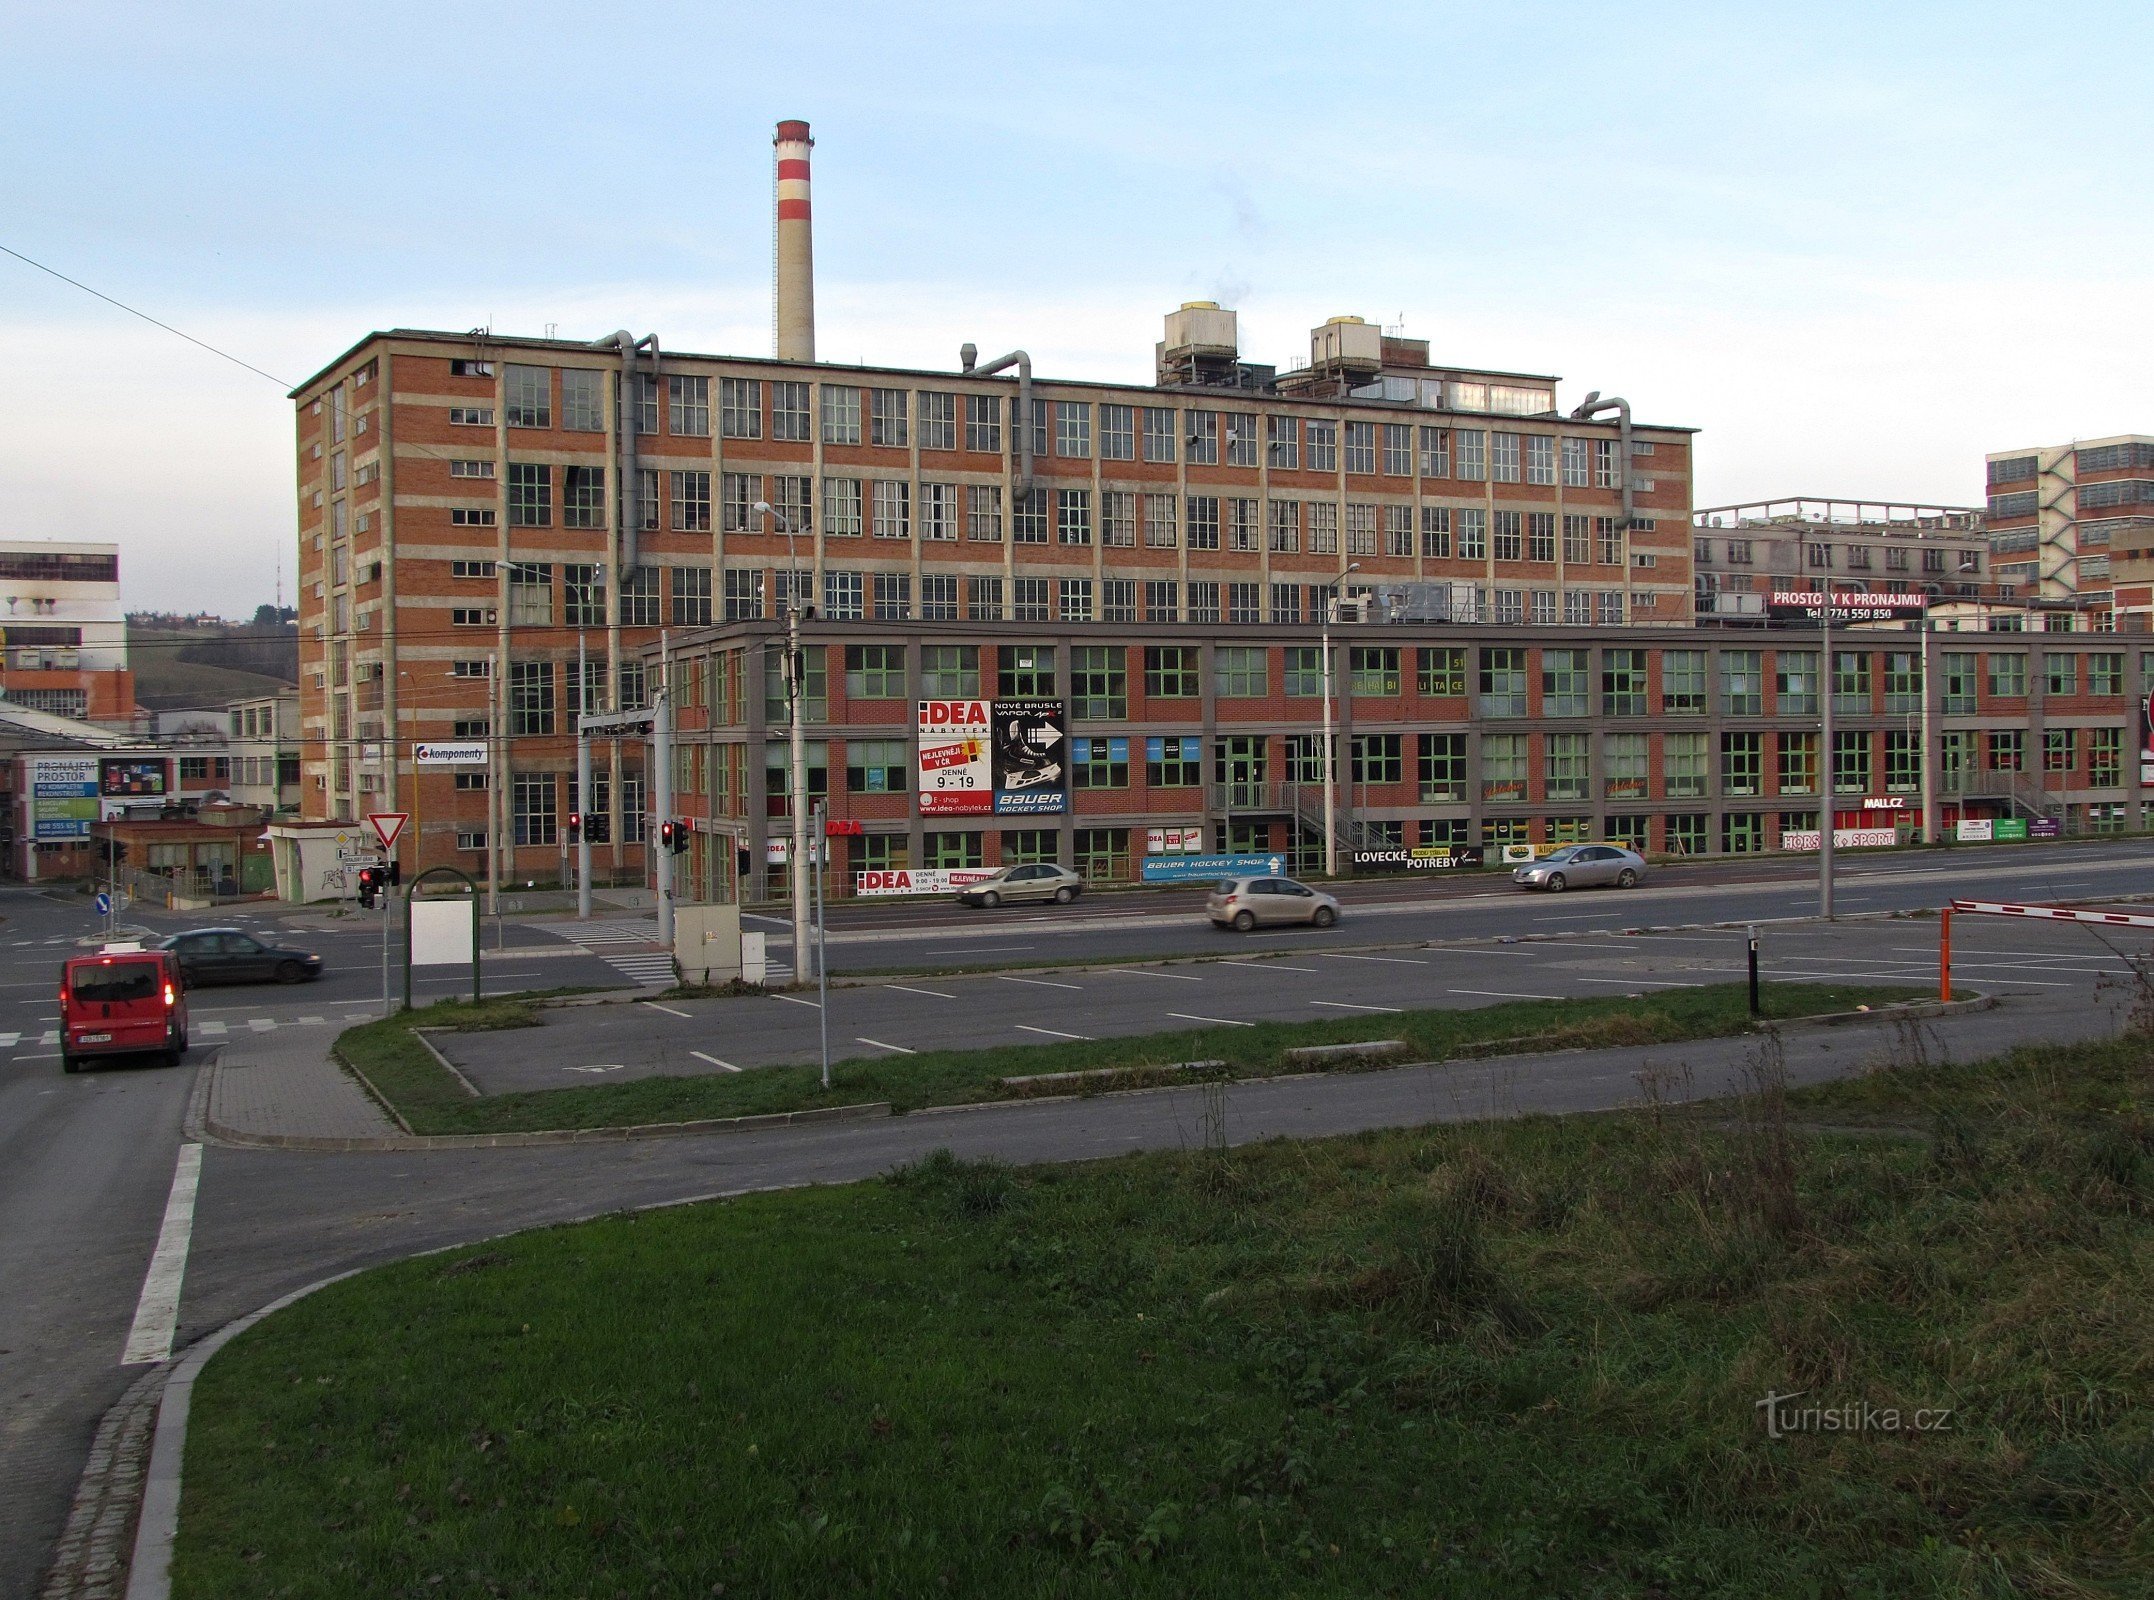 Zlín - building no. 51